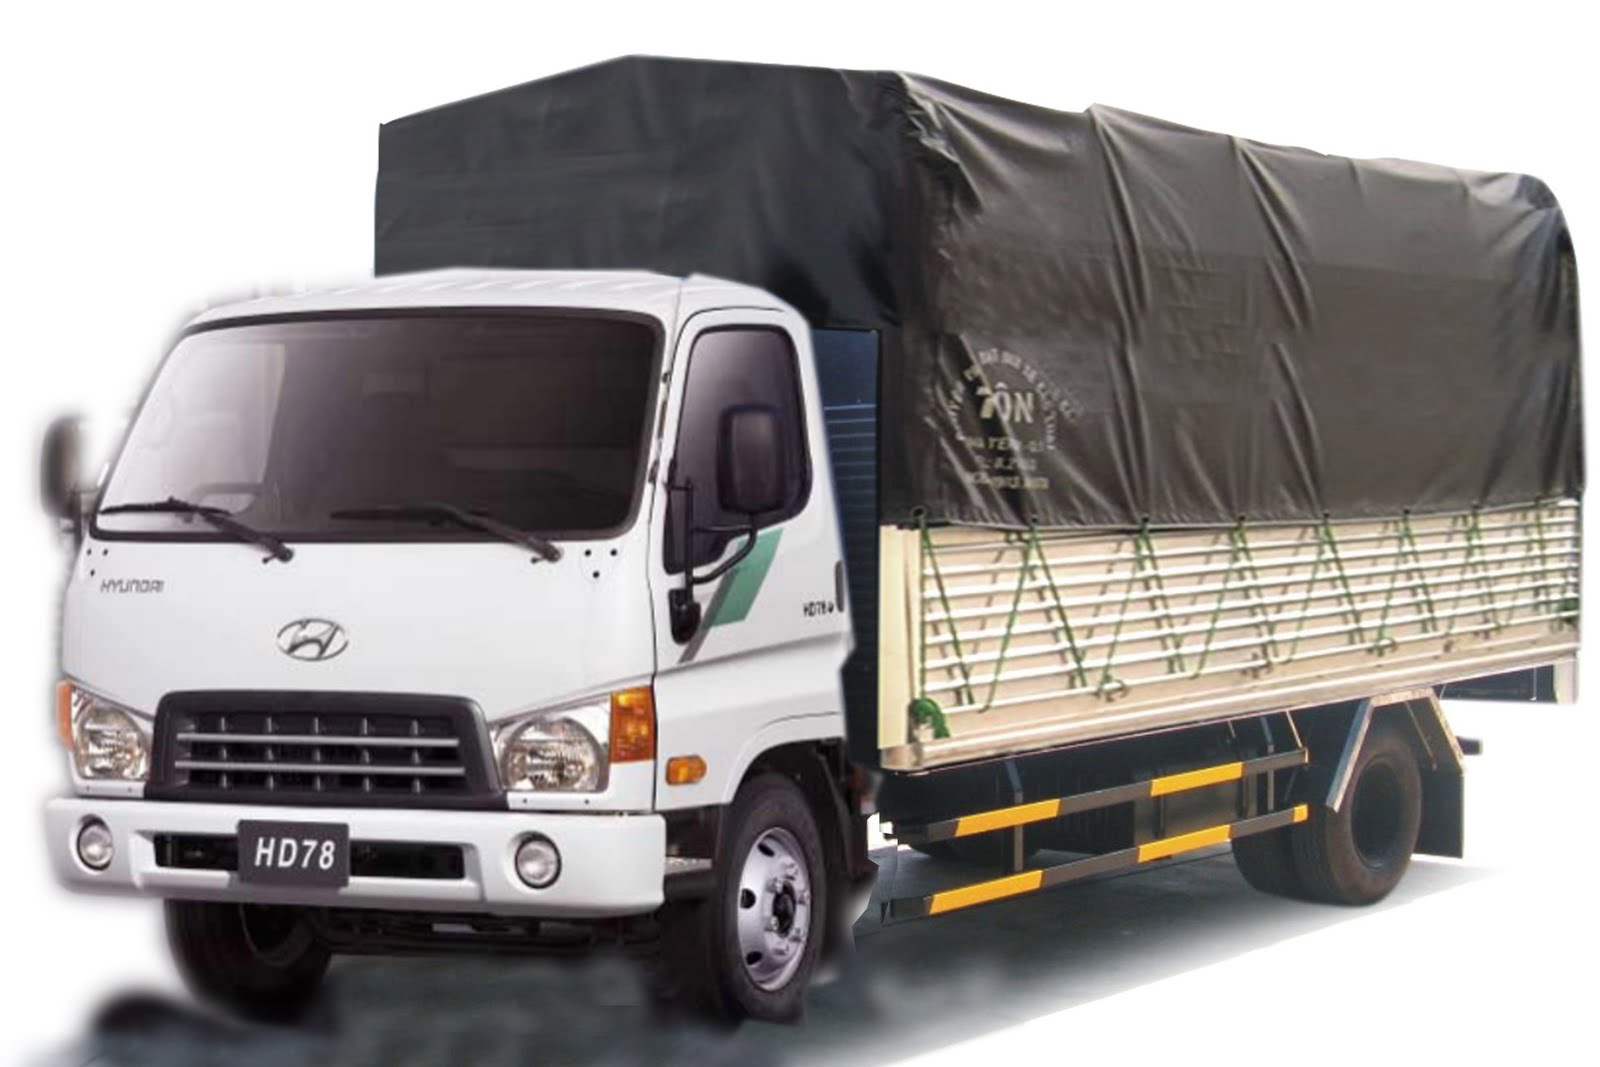 Cho thuê xe tải 1 tấn giá rẻ tại tphcm - Đường Việt Sài Gòn